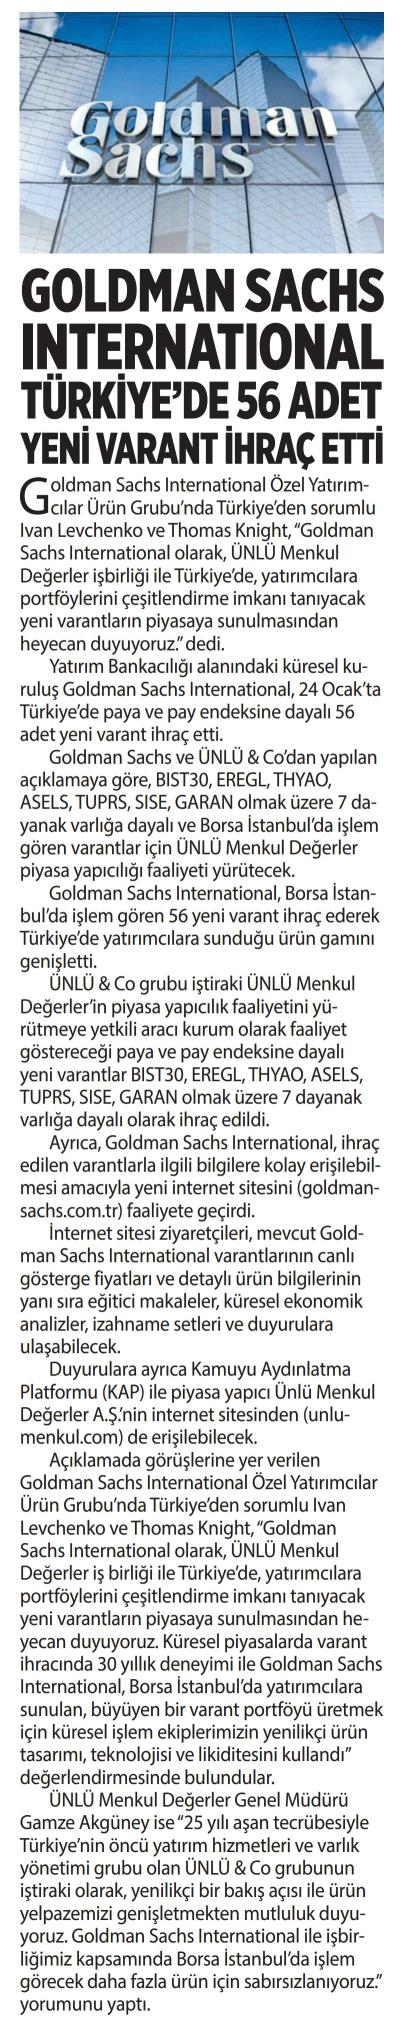 Goldman Sachs International Türkiye'de 56 Adet Yeni Varant İhraç Etti, Yeni Birlik Gazetesi